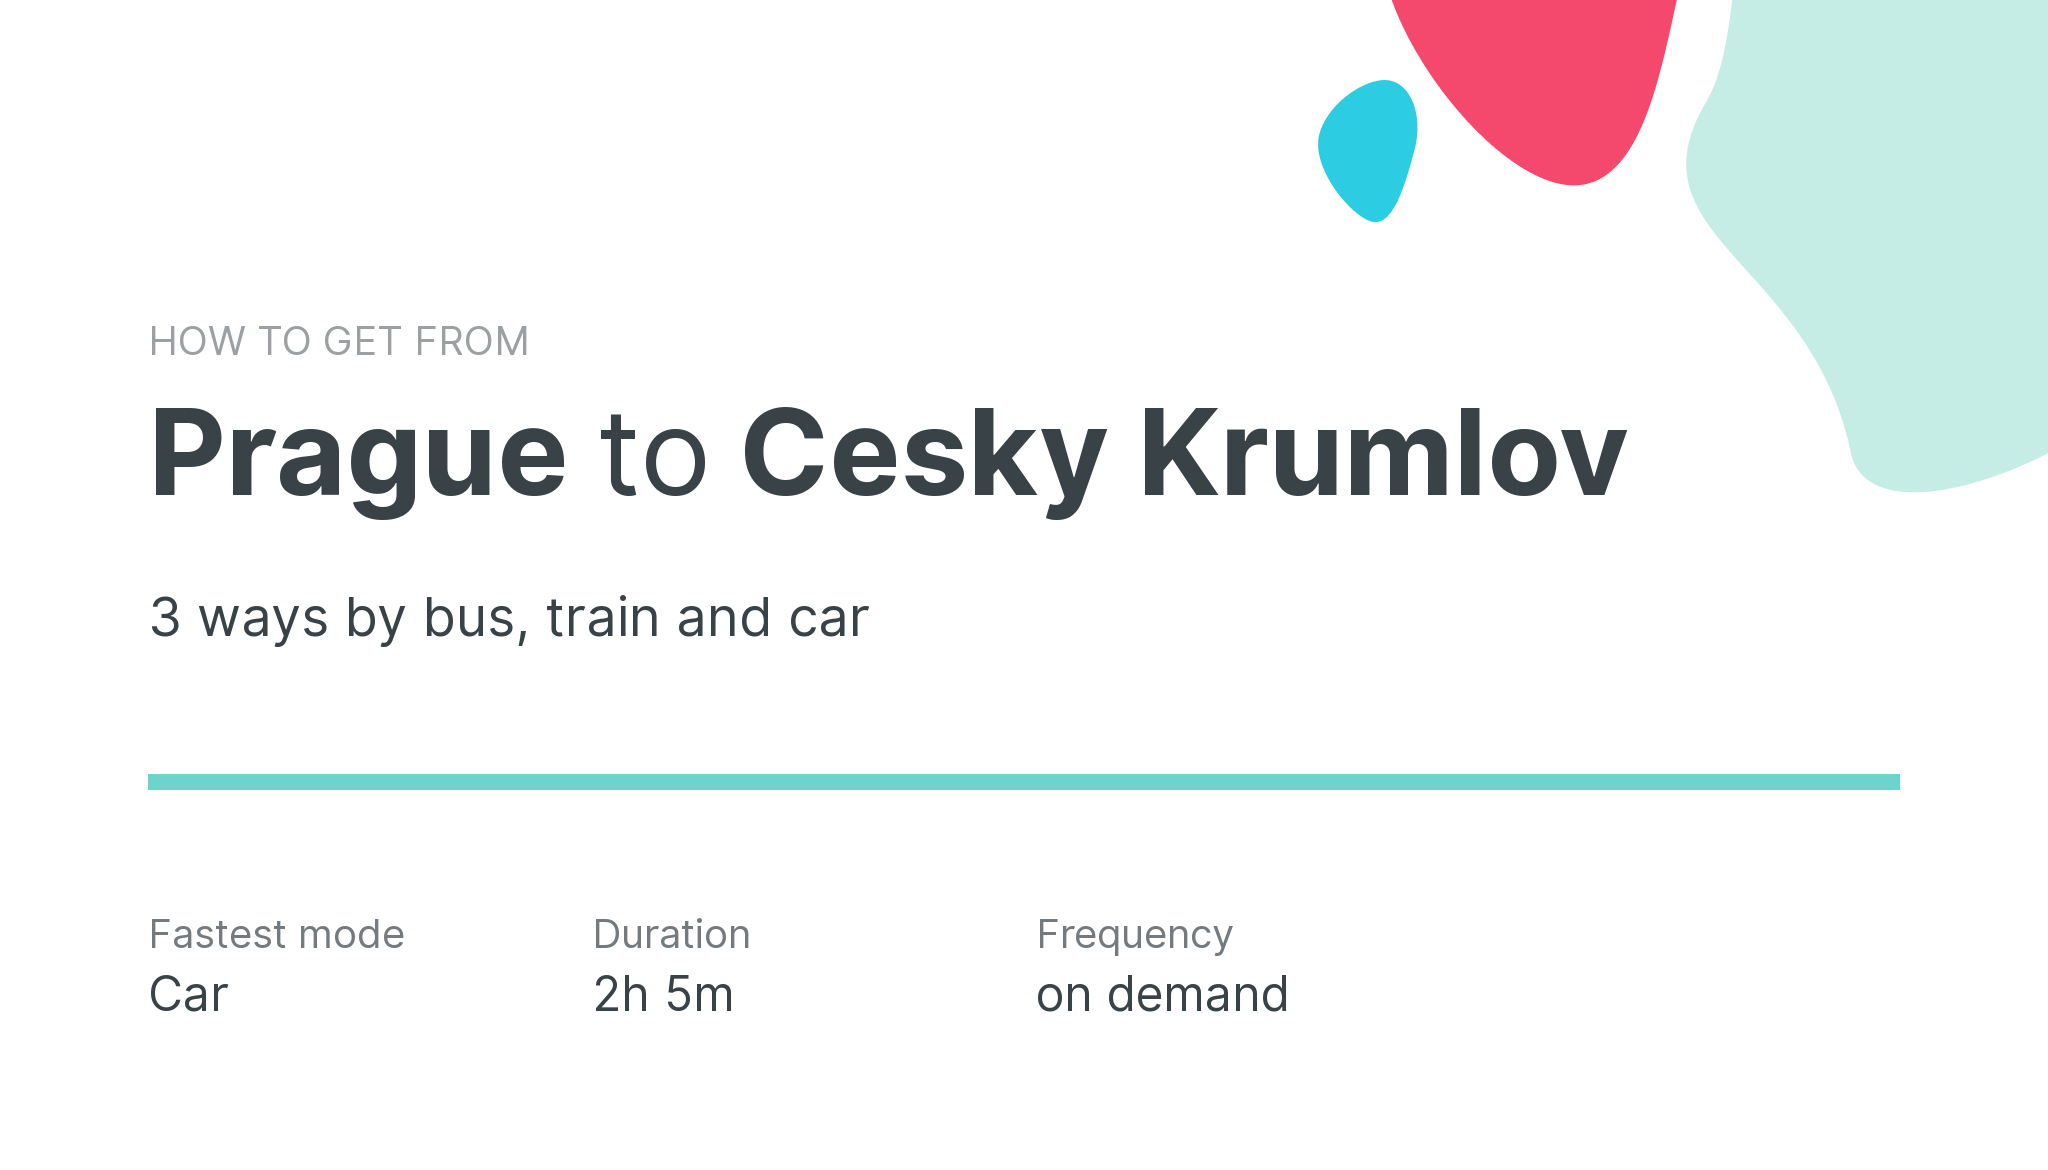 How do I get from Prague to Cesky Krumlov